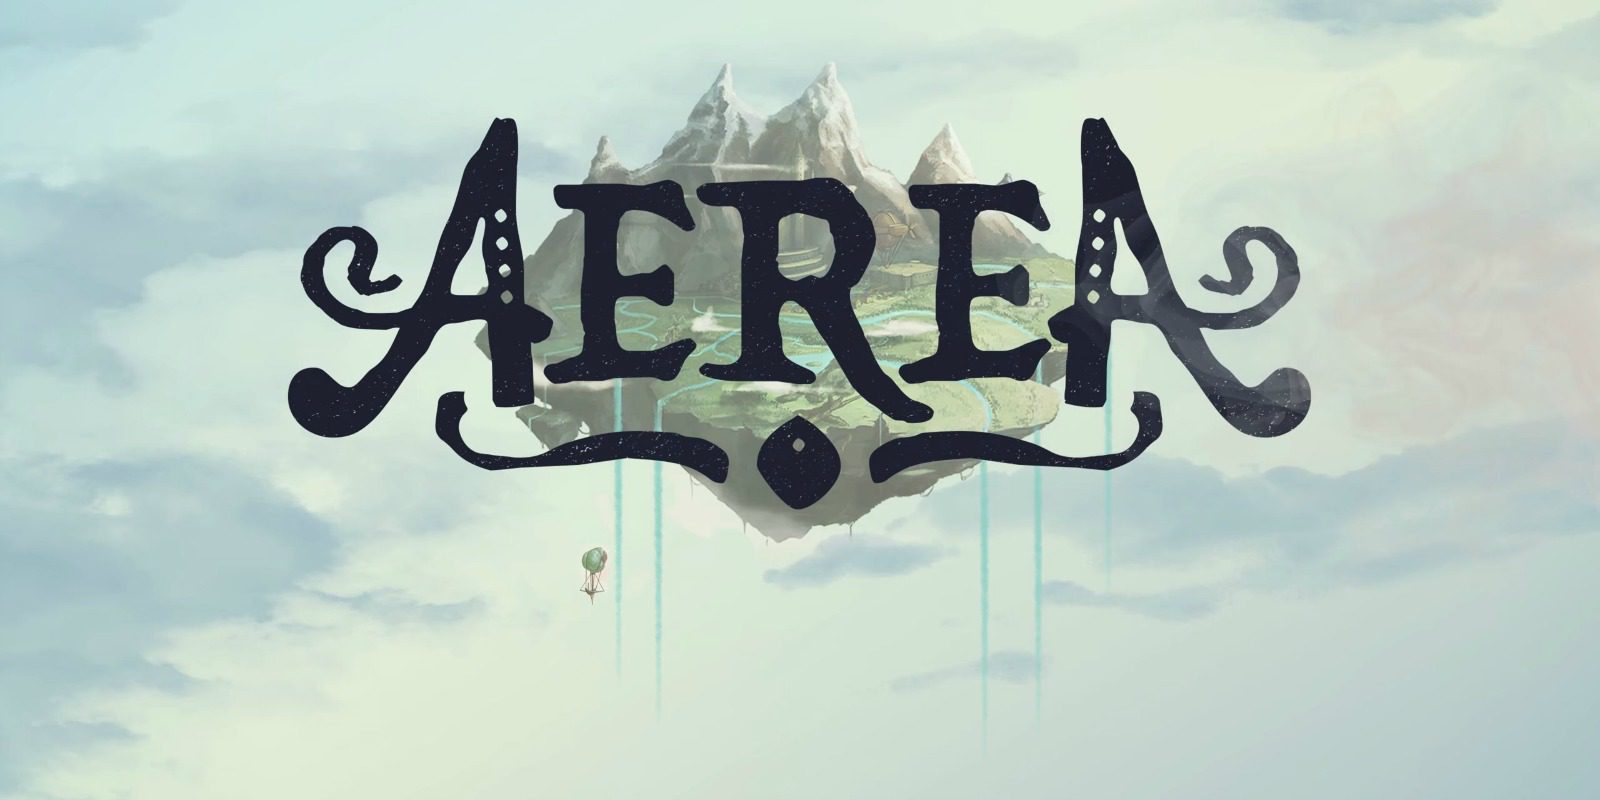 'AereA' ya está disponible en Steam como exclusividad temporal